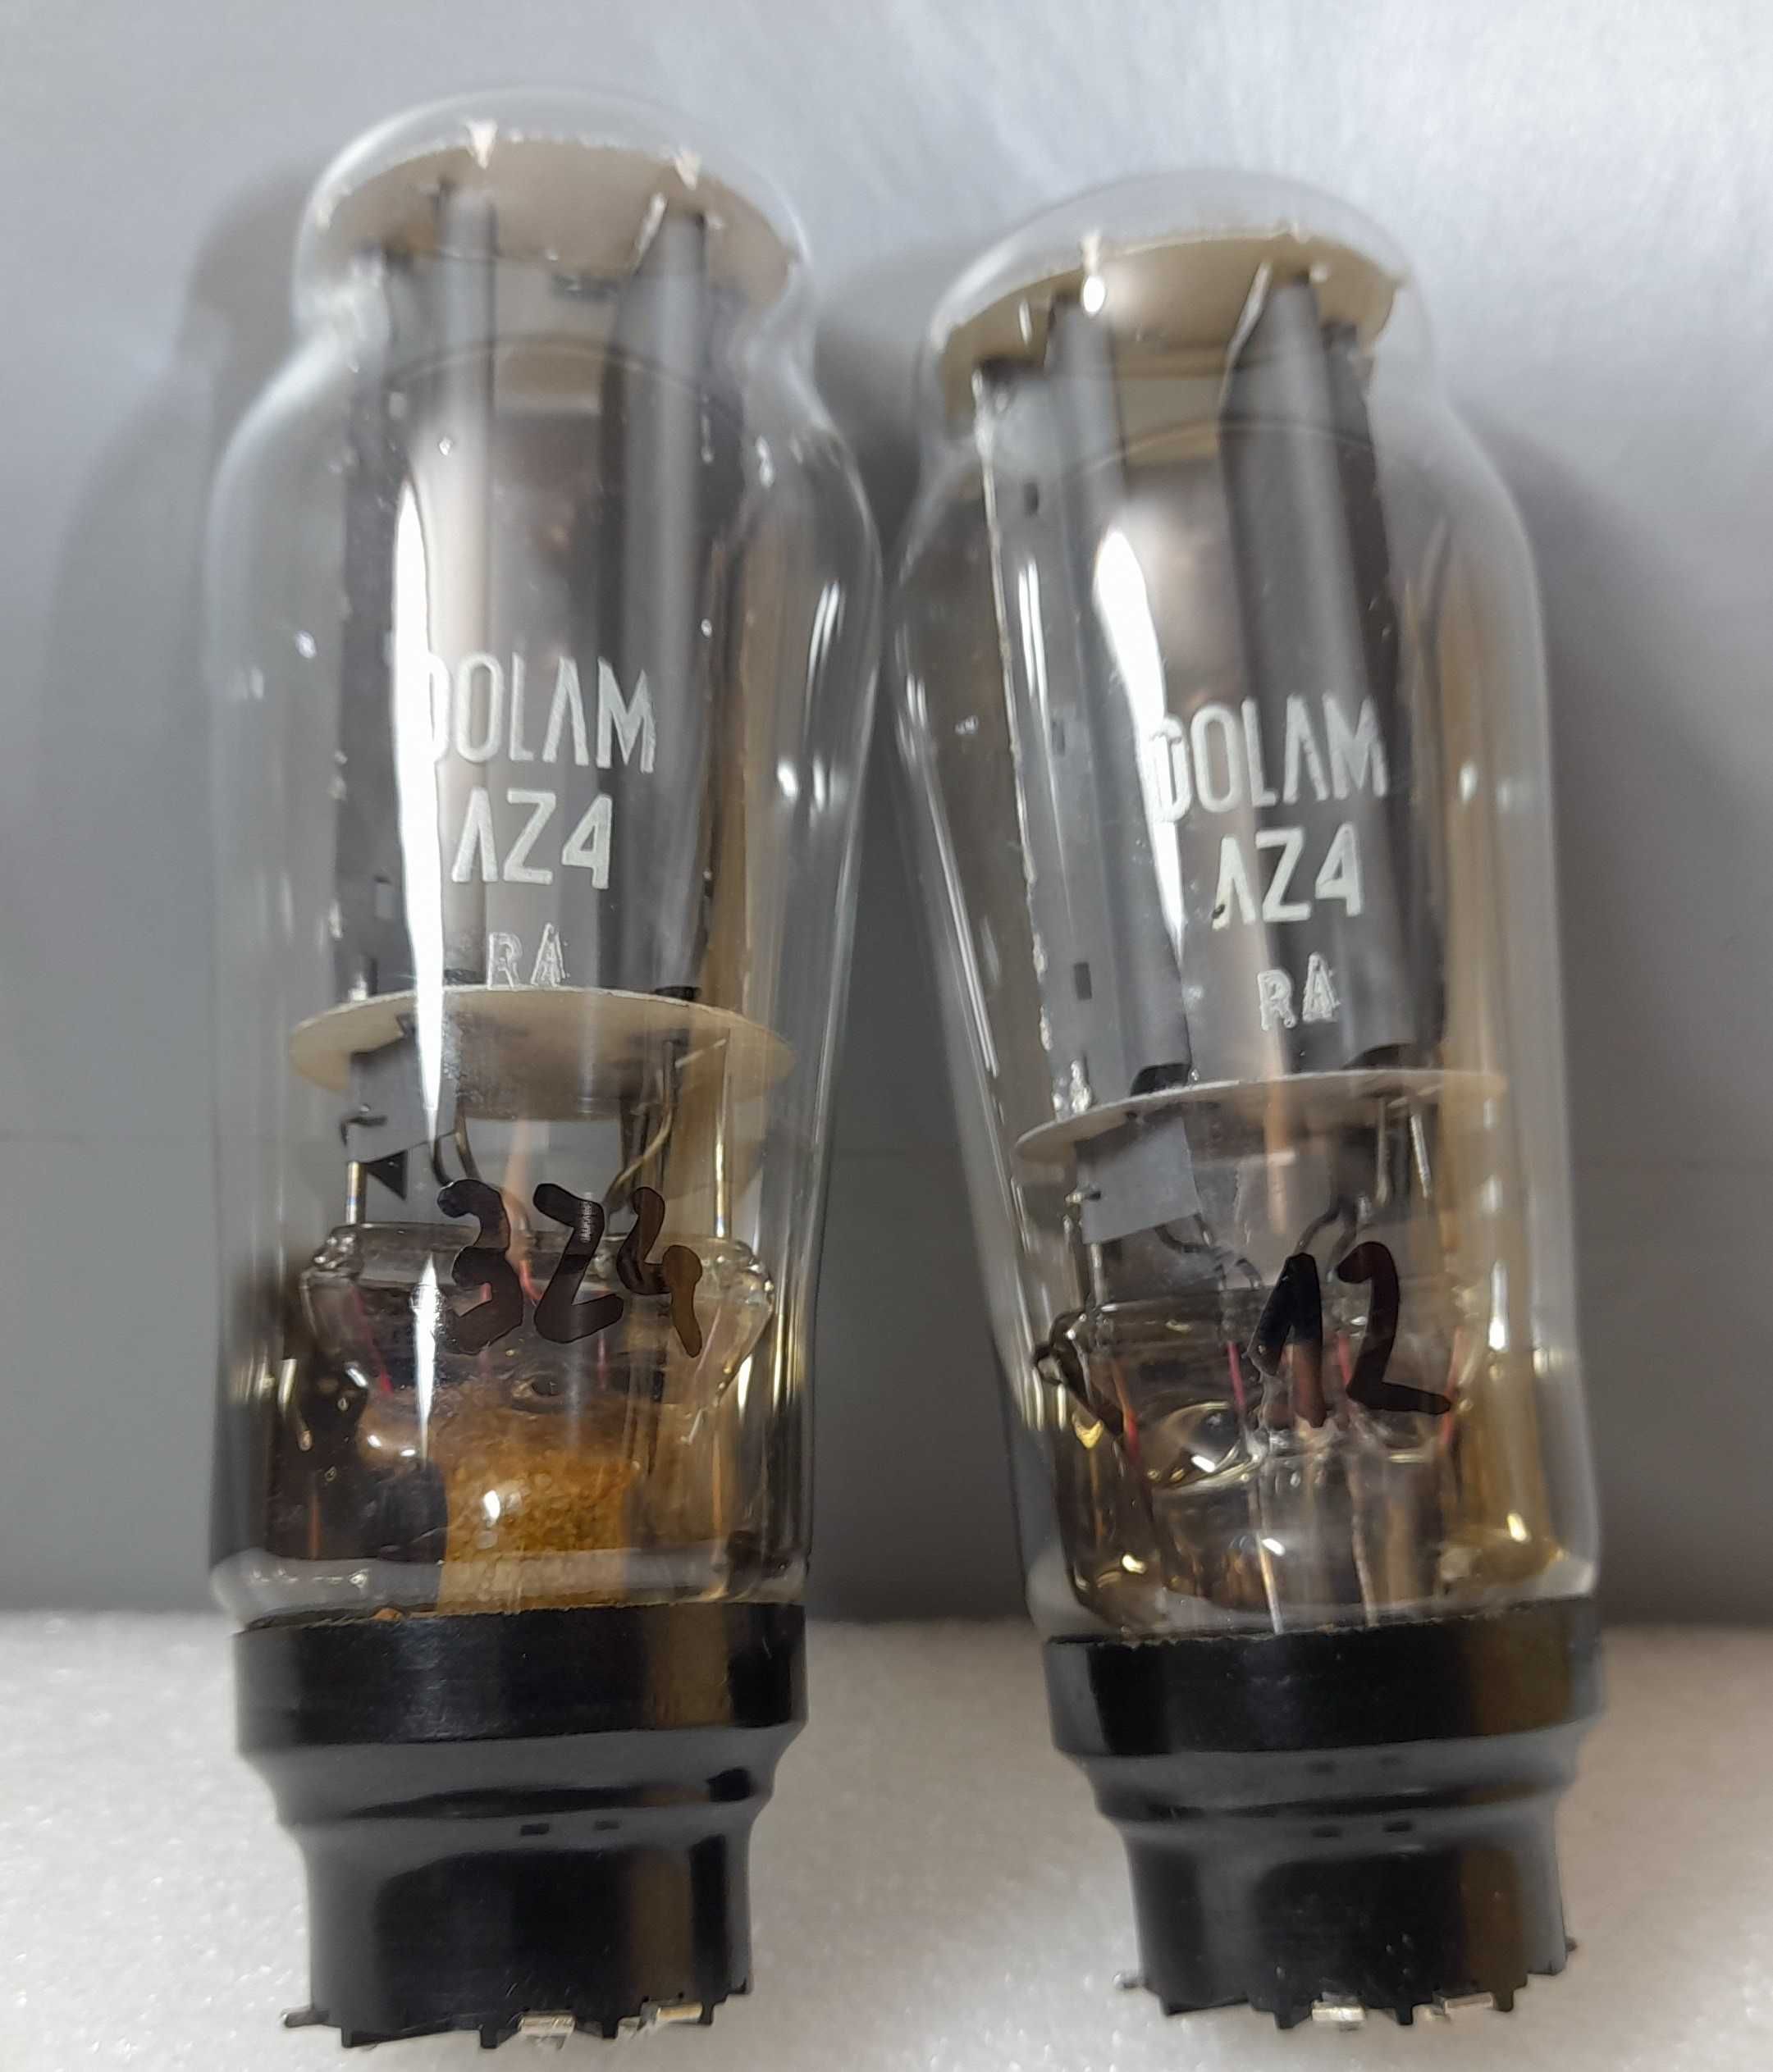 Lampy elektronowe AZ4 NOS Dolam/Telam - duodioda prostownicza